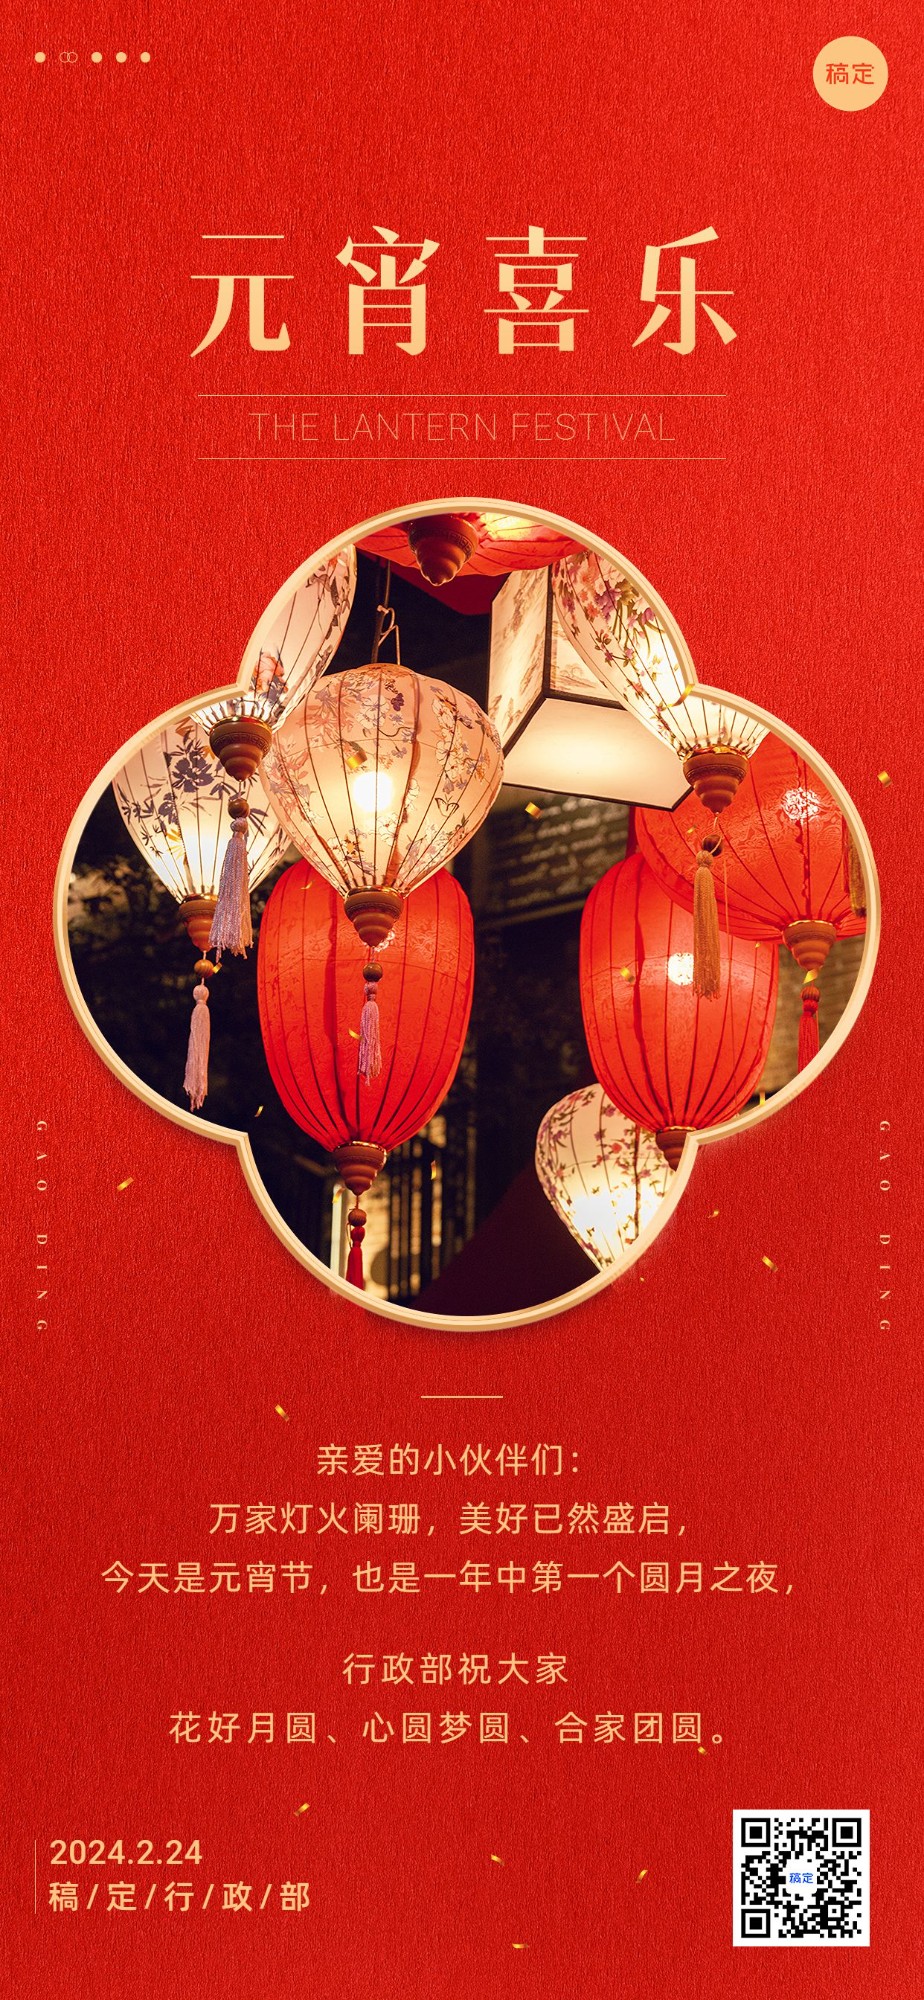 企业元宵节节日祝福贺卡实景边框风全屏竖版海报